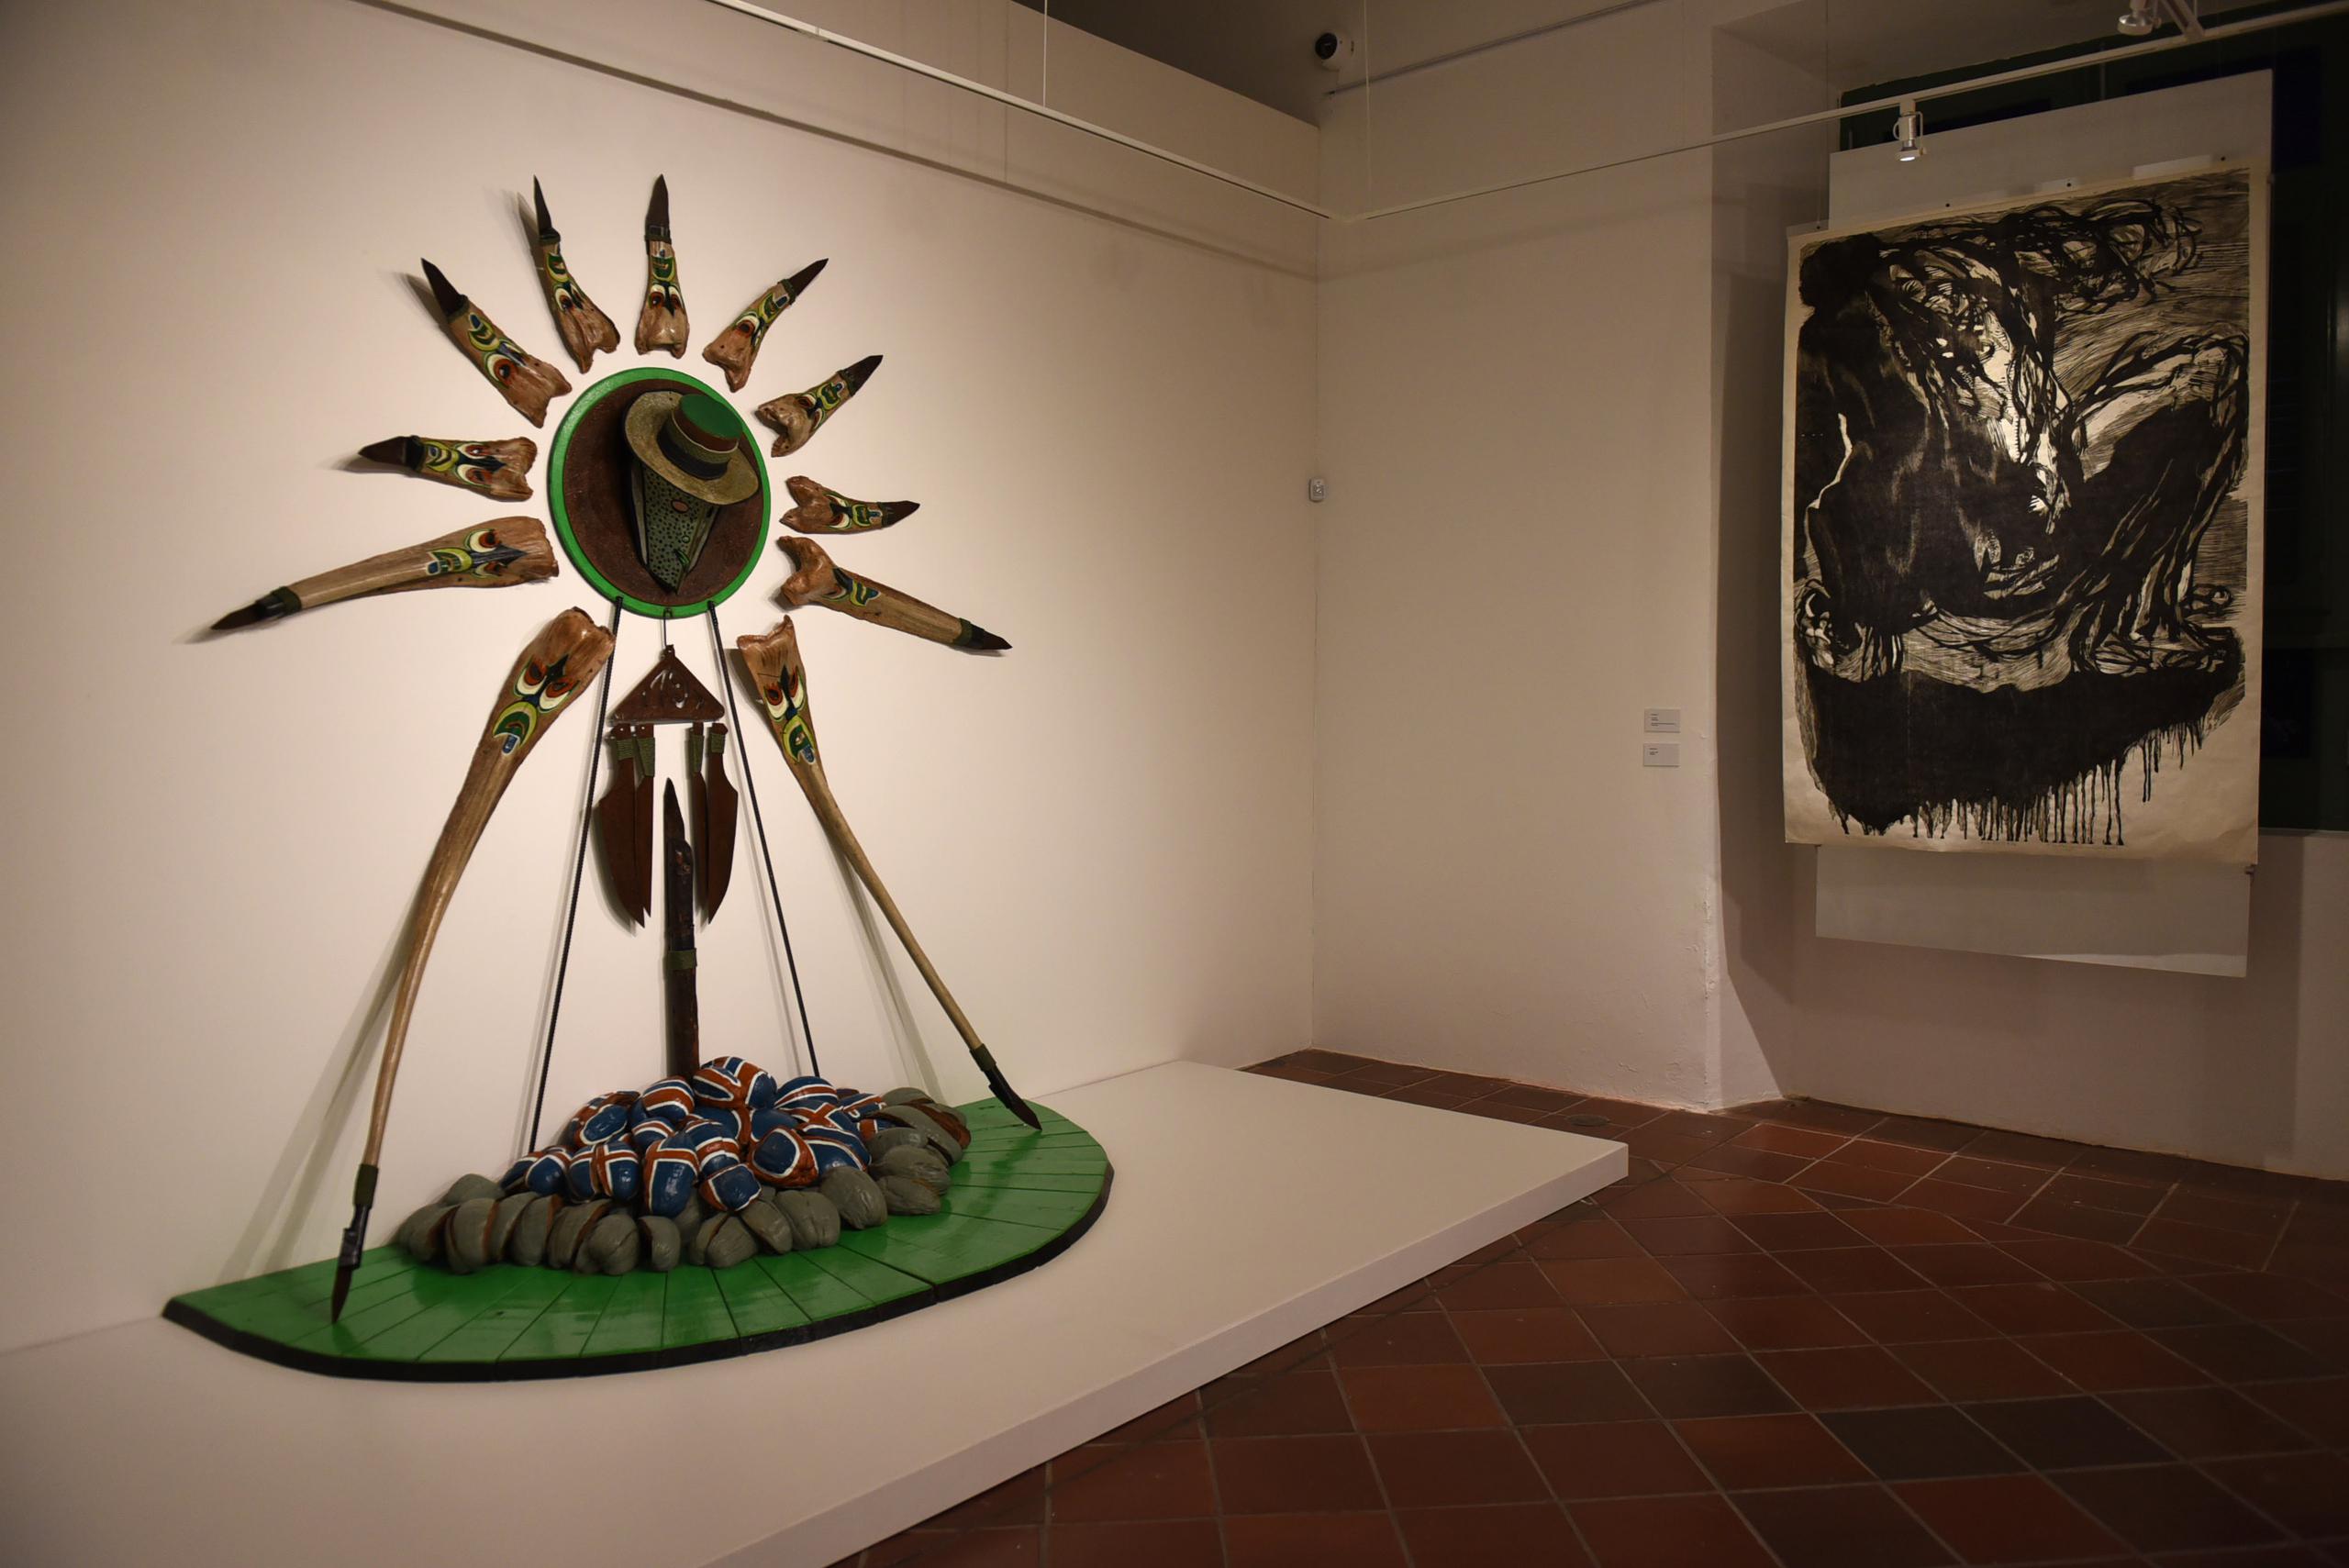 "Muestra Legado", exhibición que se encuentra ahora en la sede del ICP, buscará celebrar el pasado, presente y futuro de las artes plásticas de Puerto Rico.